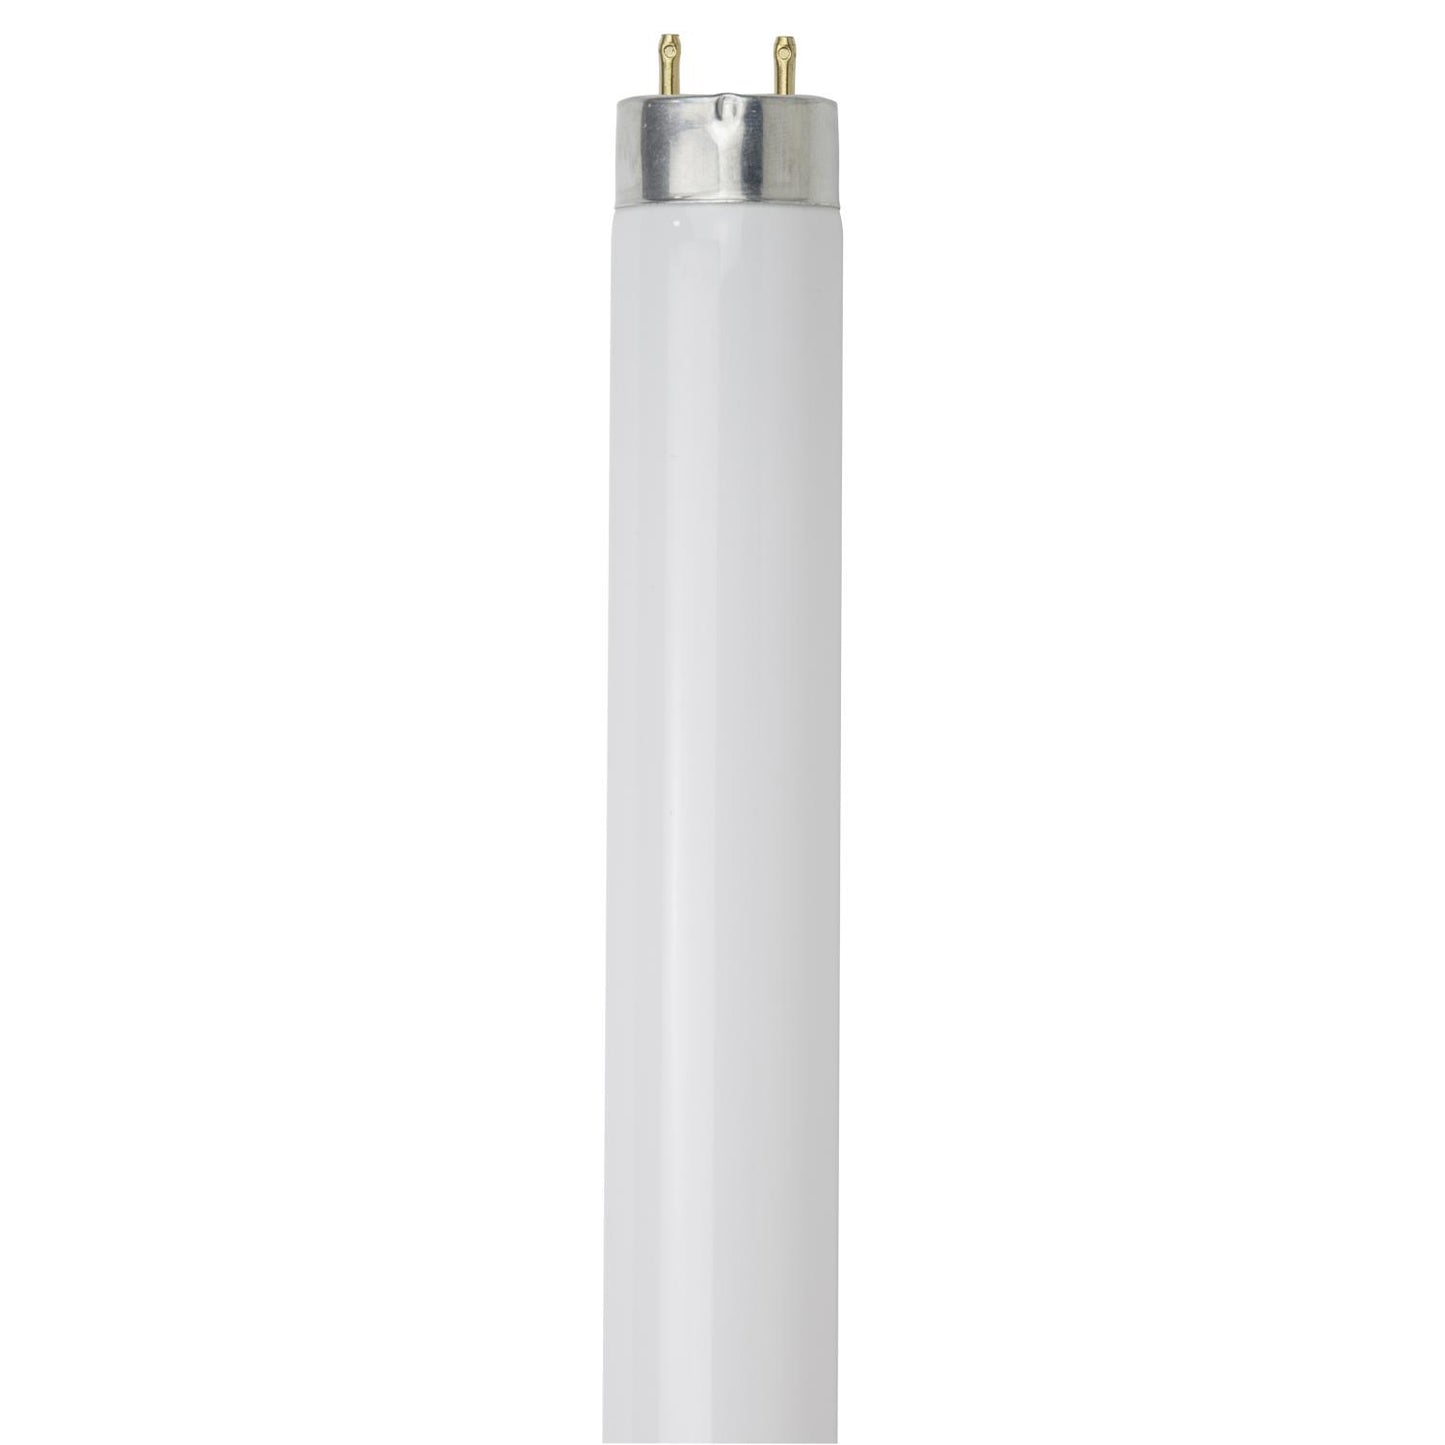 Sunlite F25T8/SP850/30PK 25 Watt T8 High Performance Straight Tube Medium Bi-Pin (G13) Base, 5000K Soft White